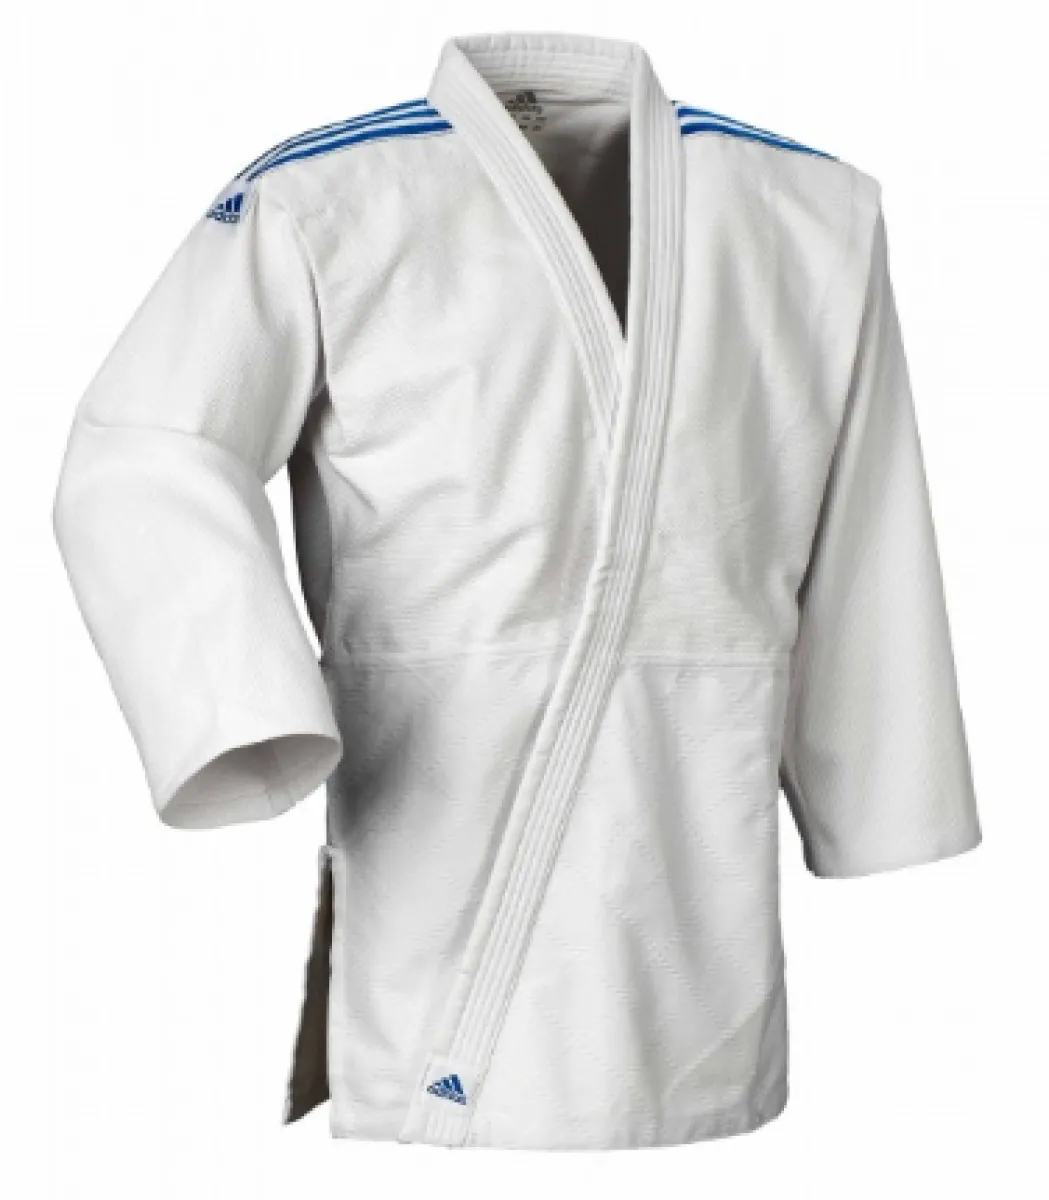 Traje de judo Adidas Club J350 blanco con rayas azules en los hombros